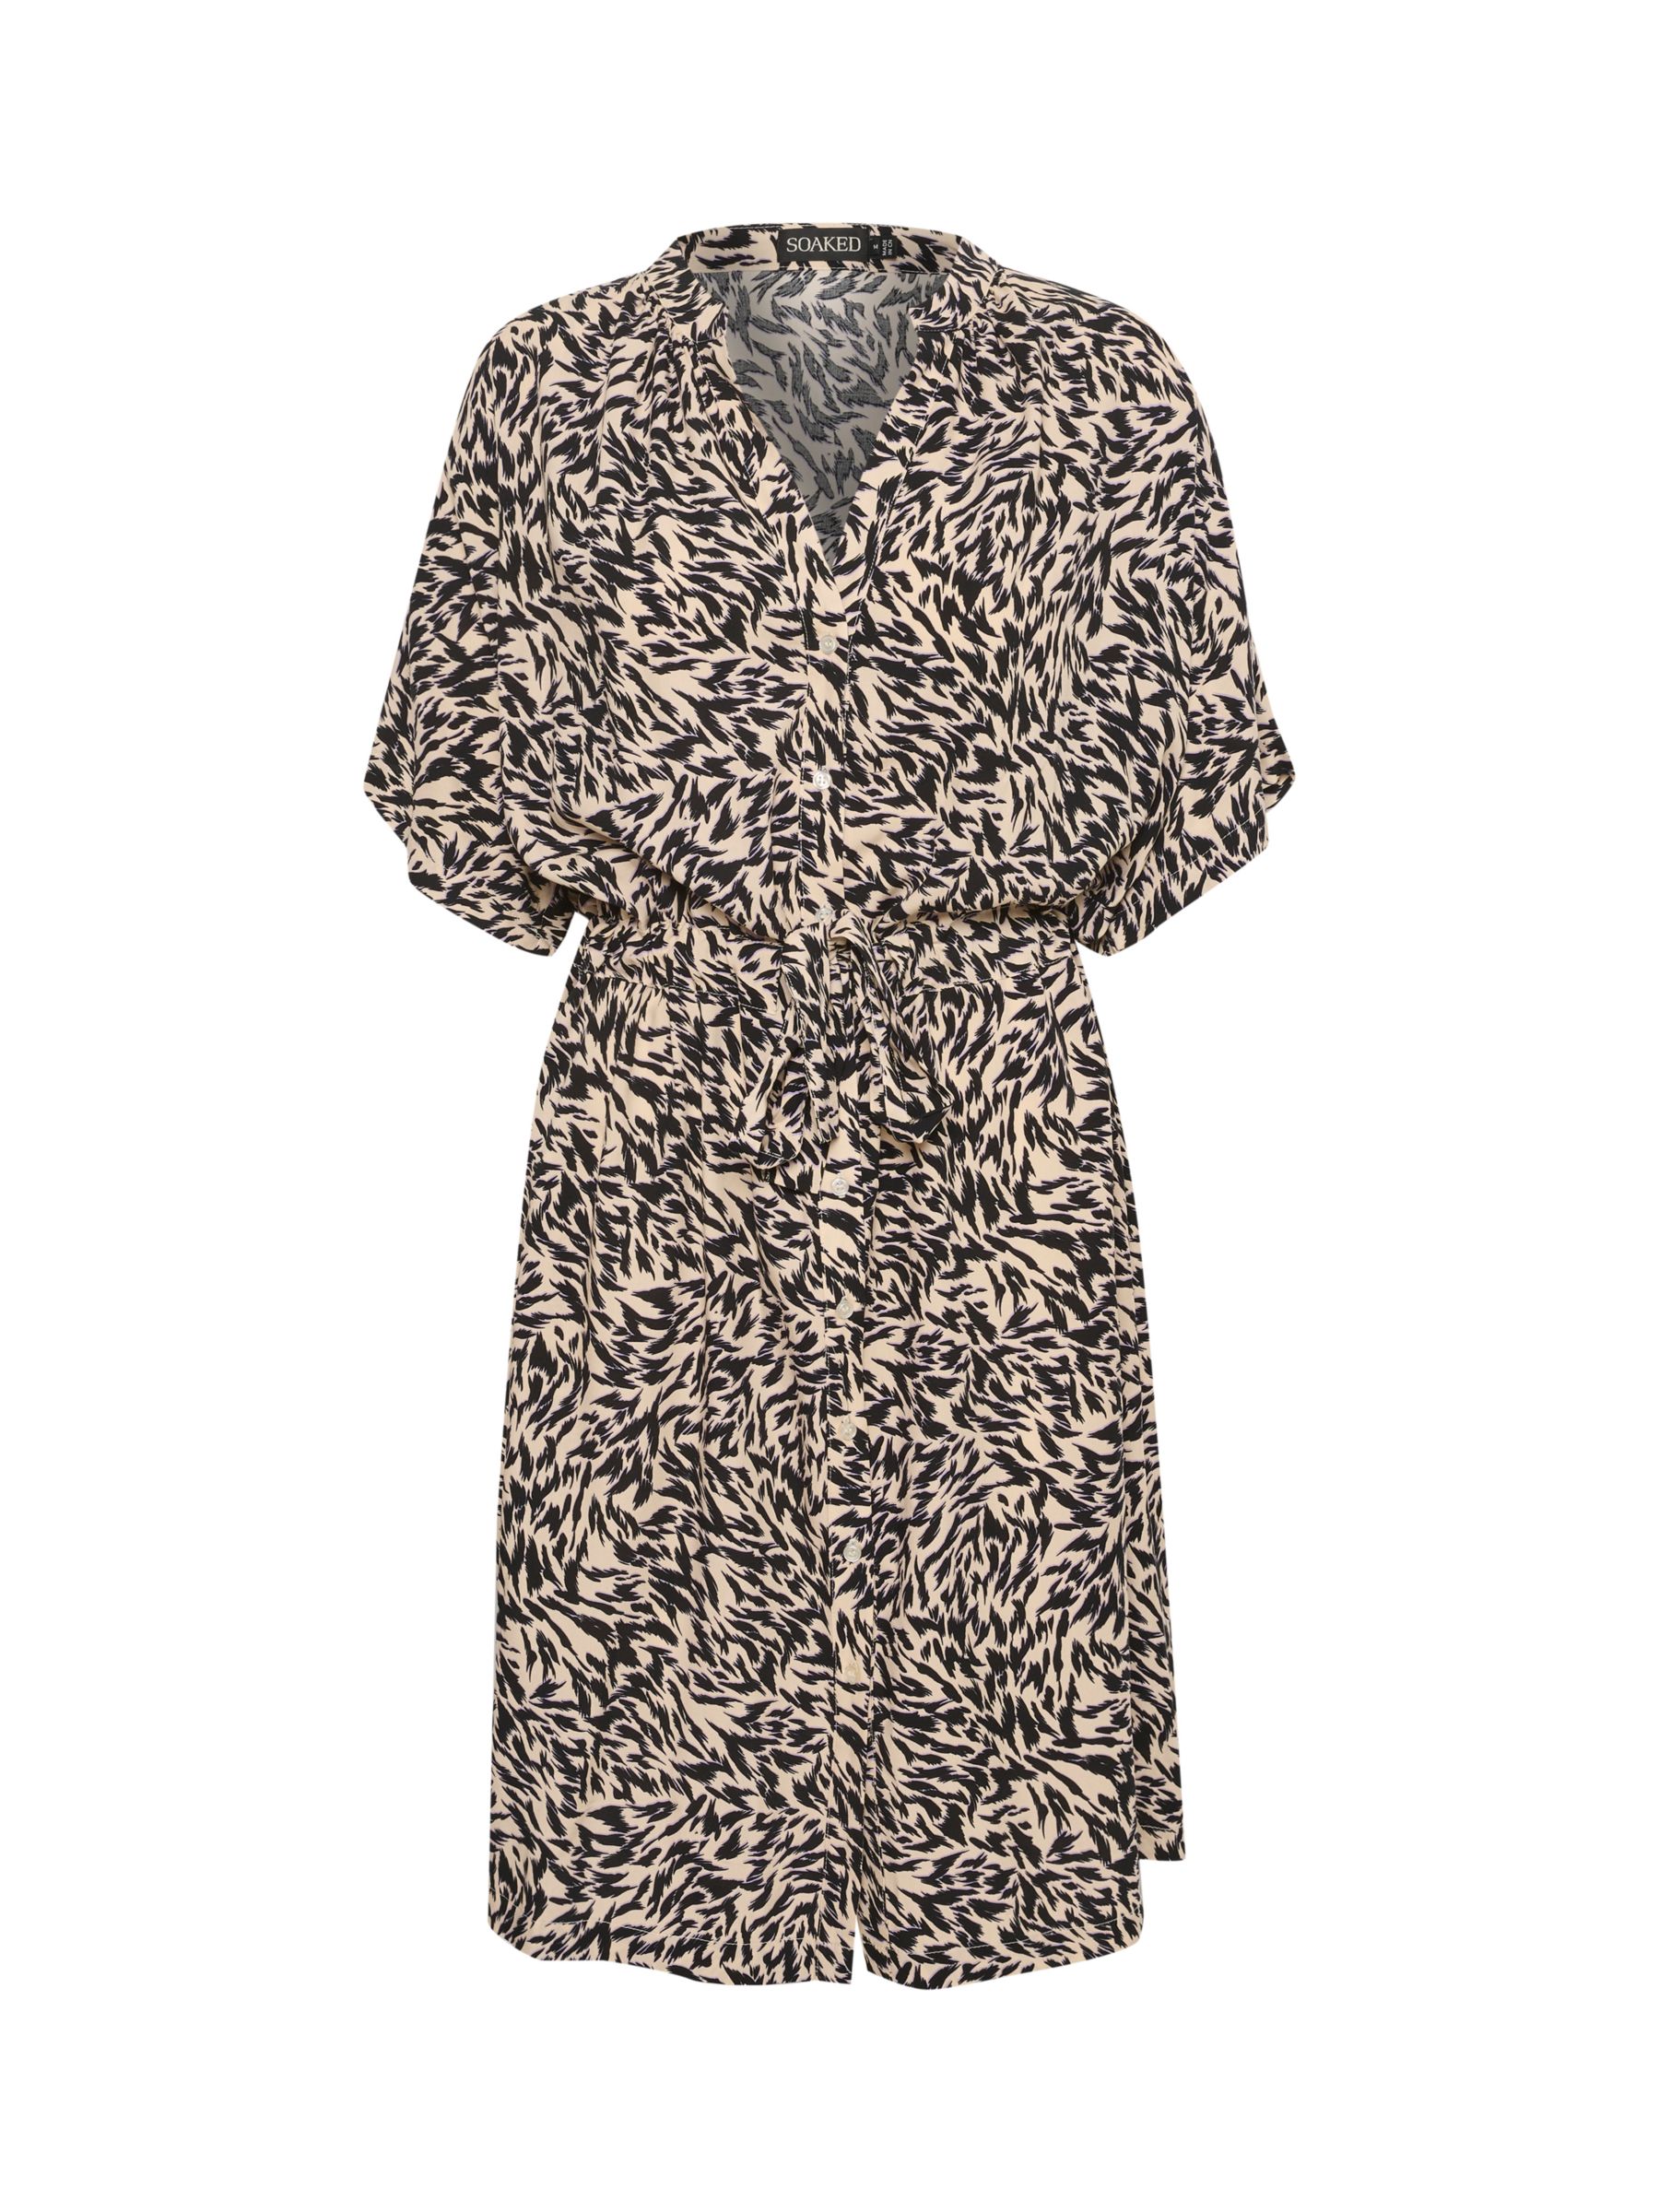 Buy Soaked In Luxury Arowe Short Sleeve Knee Length Dress, Black Preppy Online at johnlewis.com